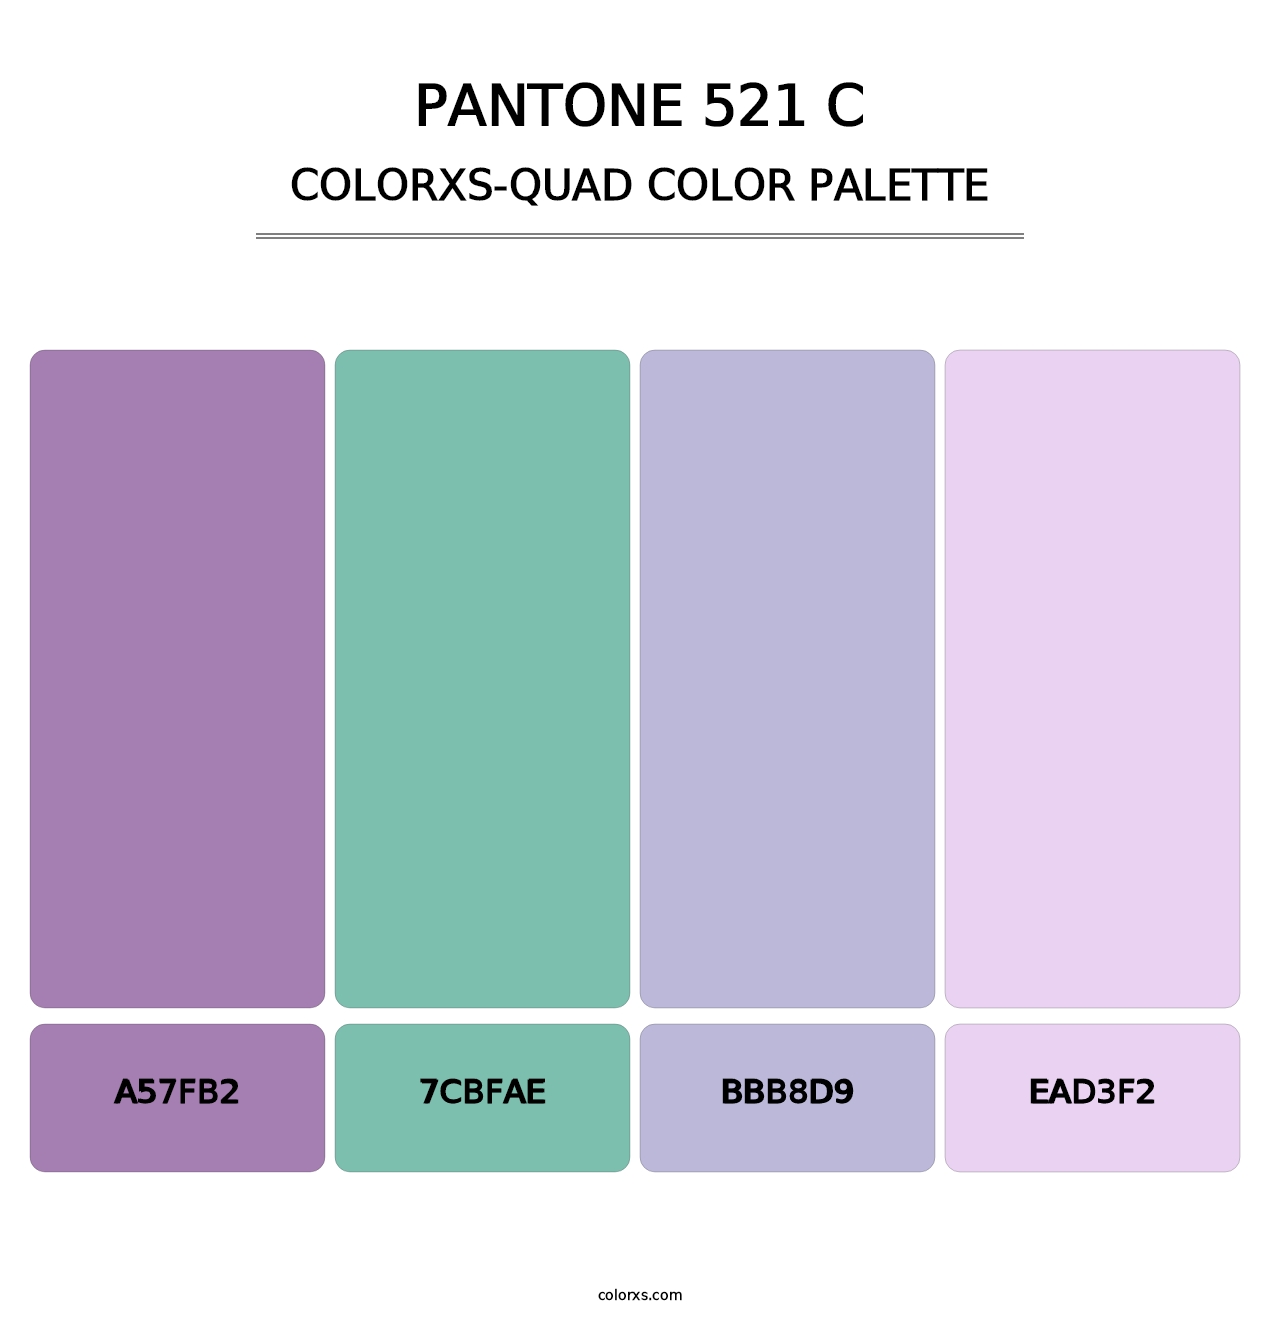 PANTONE 521 C - Colorxs Quad Palette